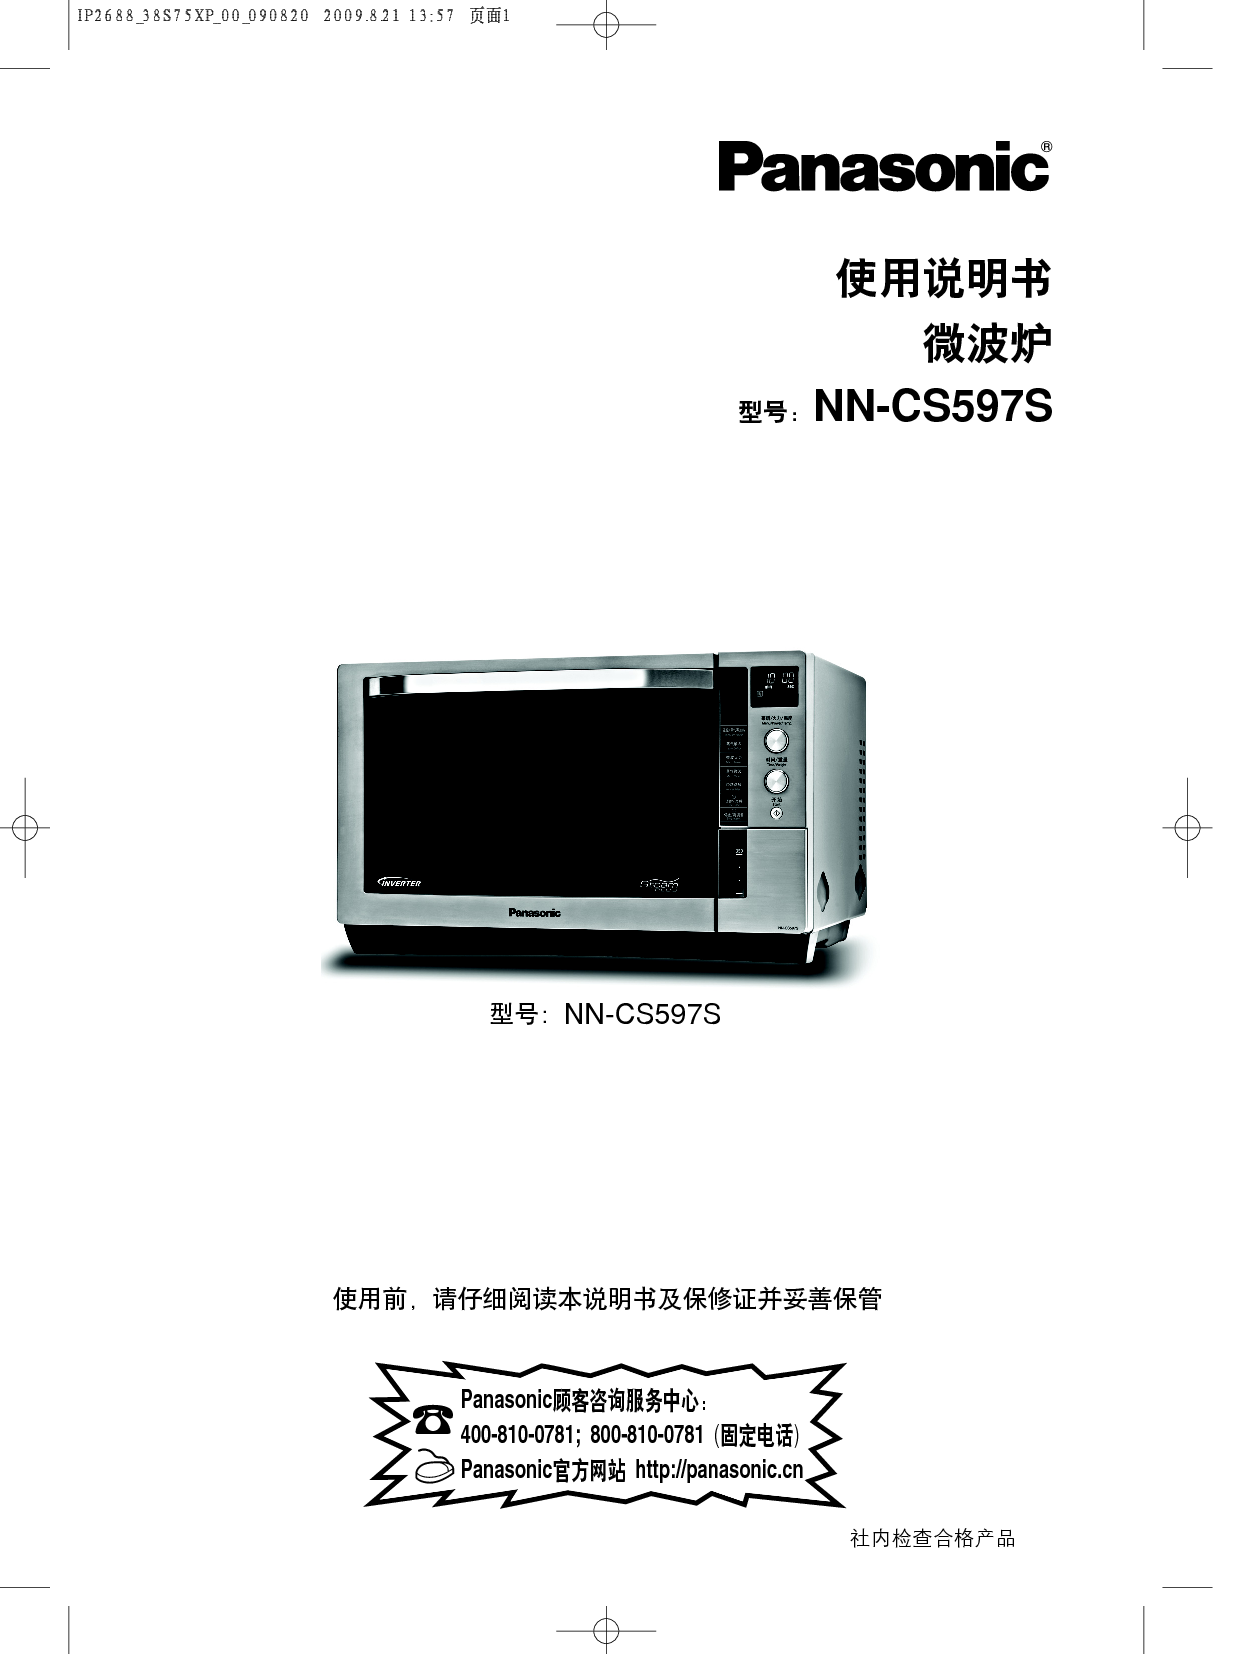 松下 Panasonic NN-CS597S 说明书 封面